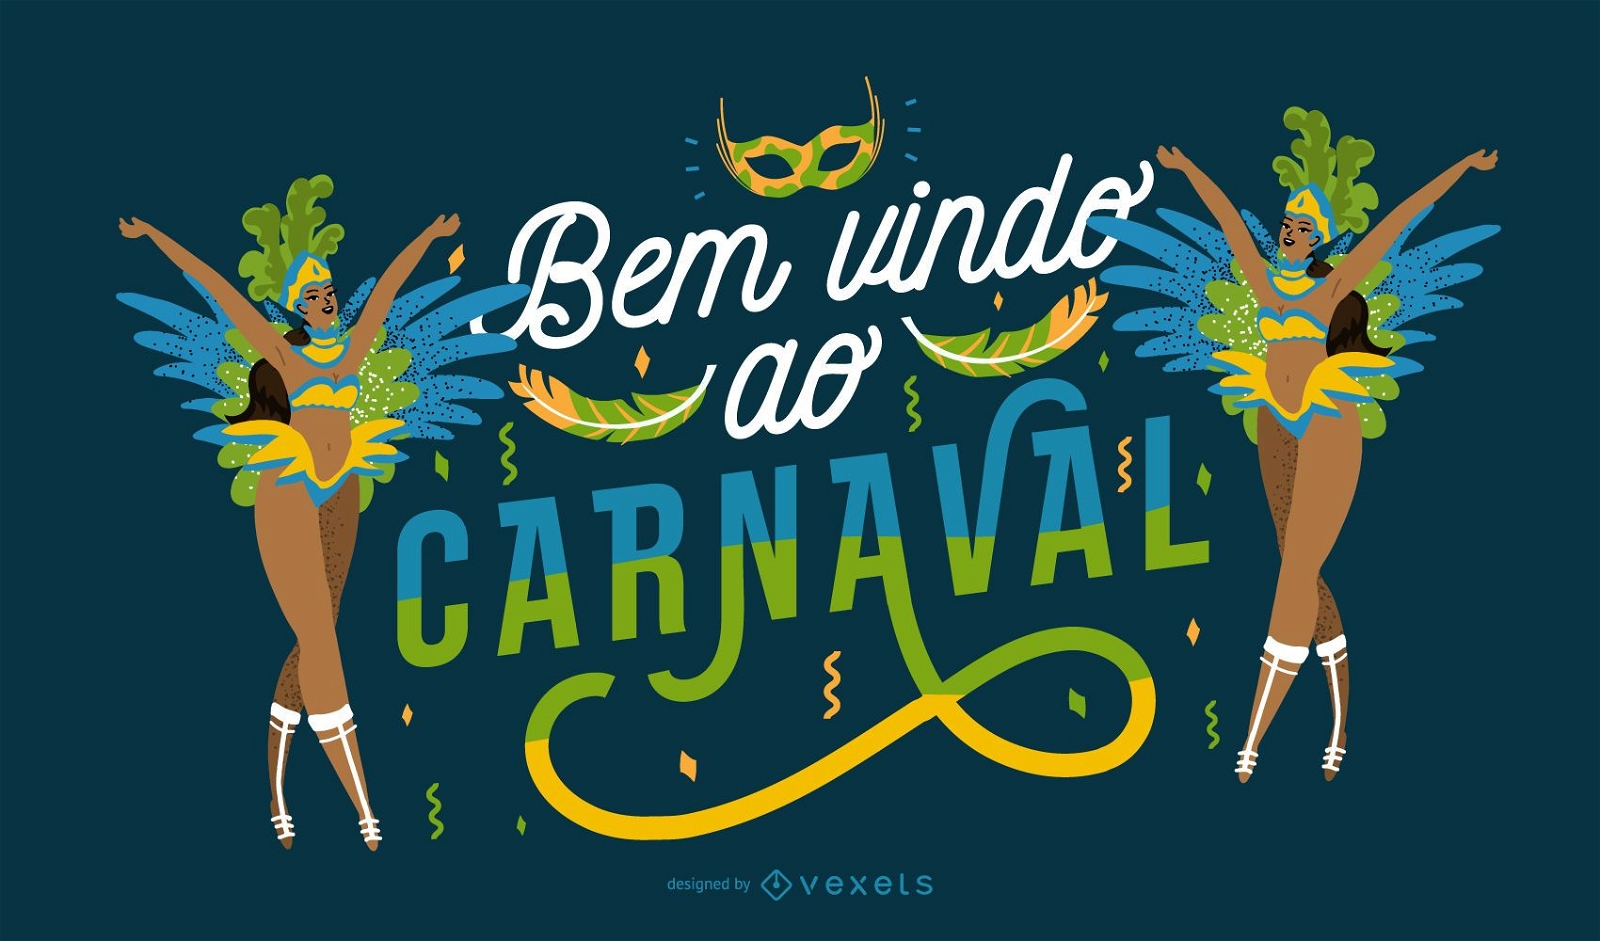 Bienvenido a Carnival Portuguese Quote Design